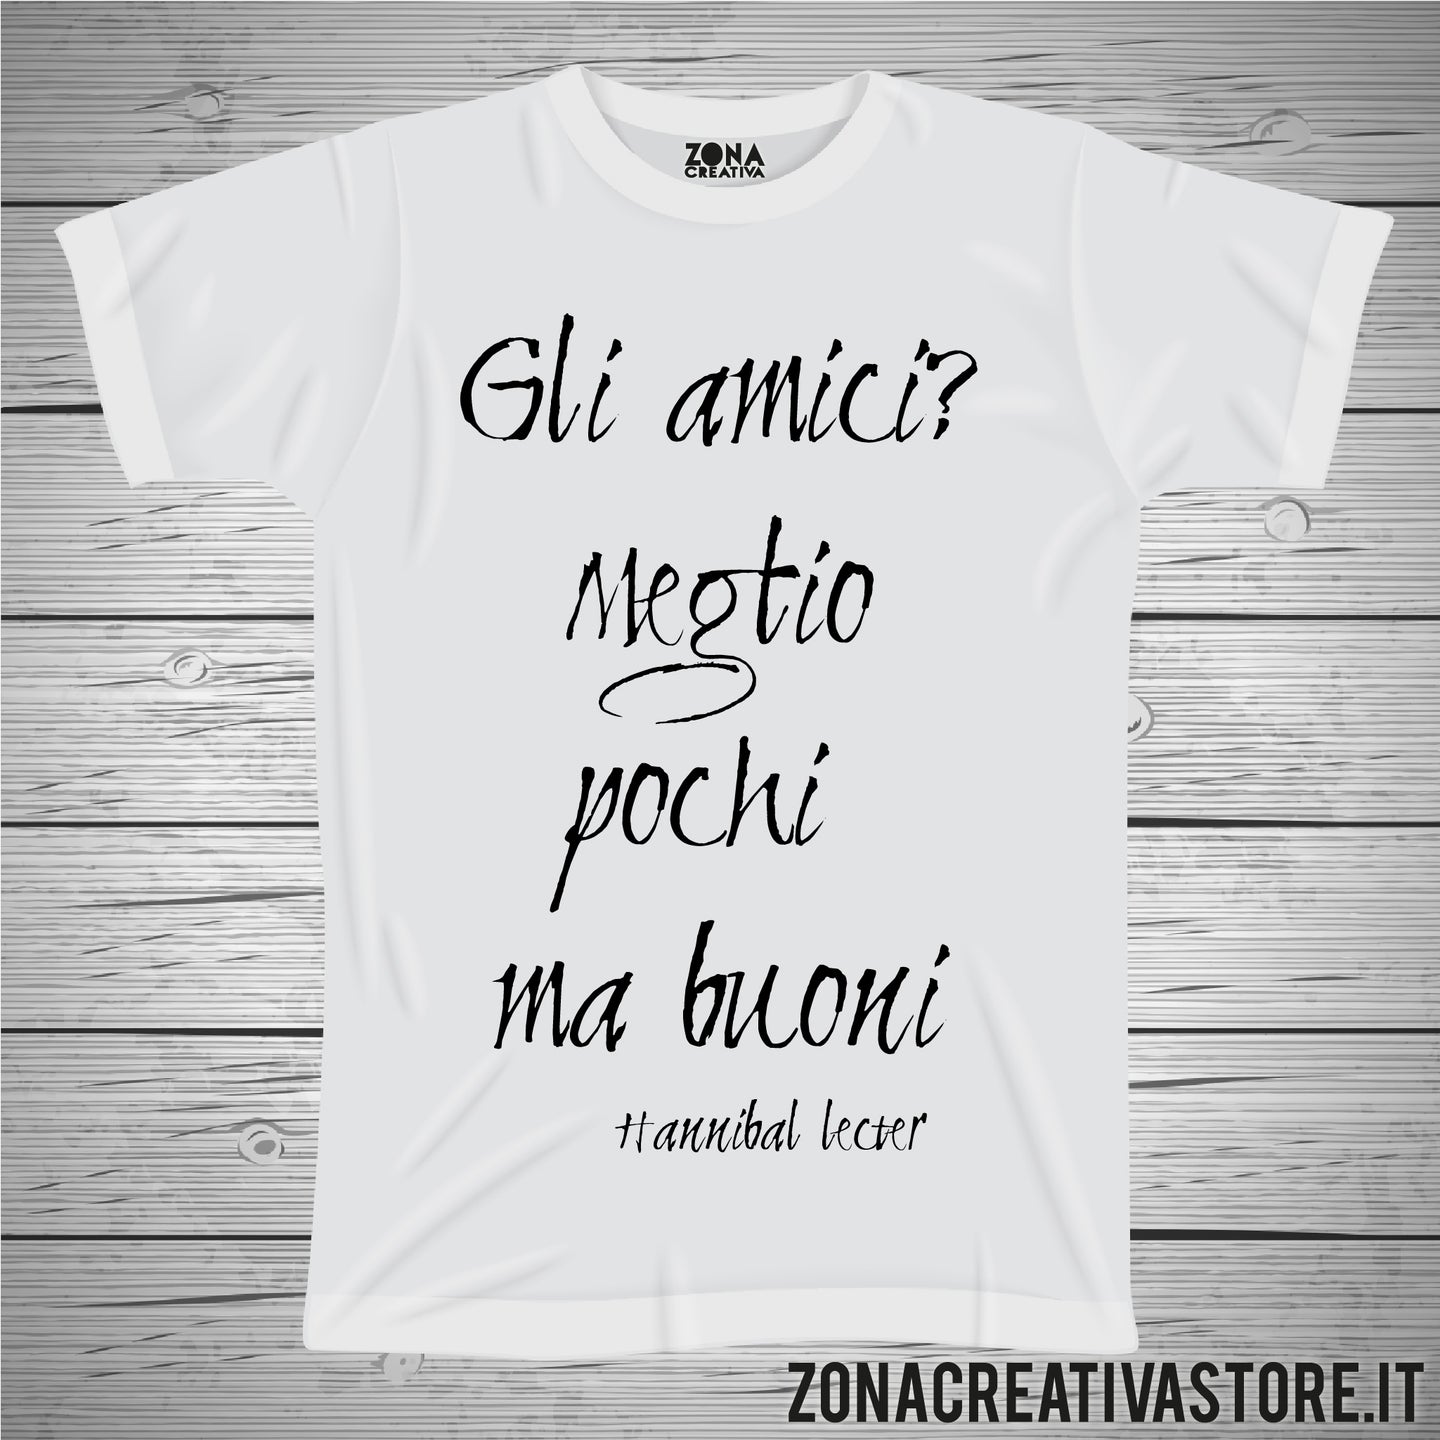 T-shirt GLI AMICI MEGLIO POCHI MA BUONI